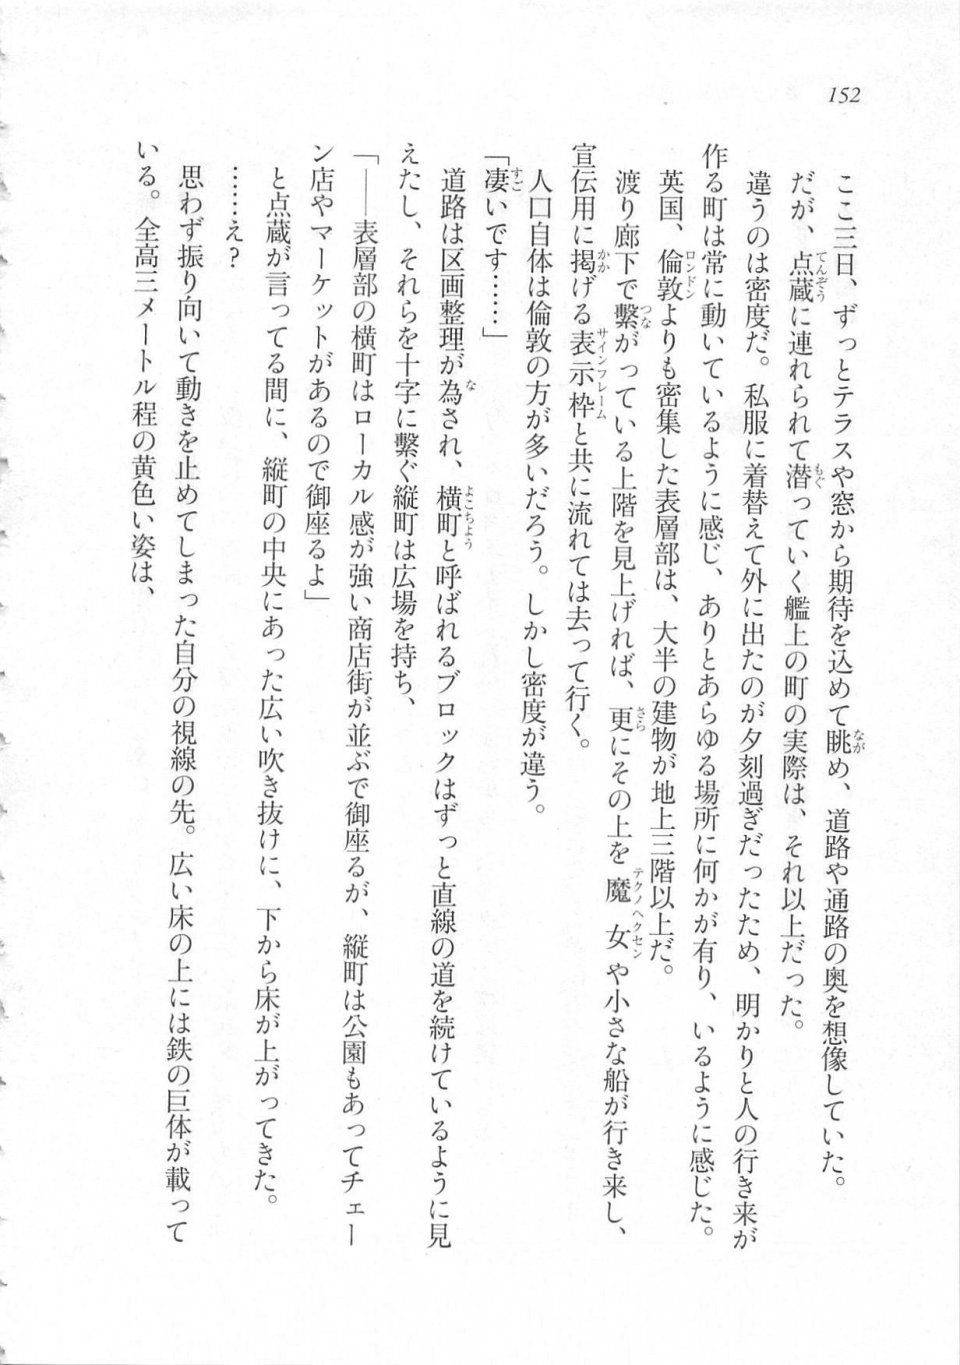 Kyoukai Senjou no Horizon LN Sidestory Vol 3 - Photo #156